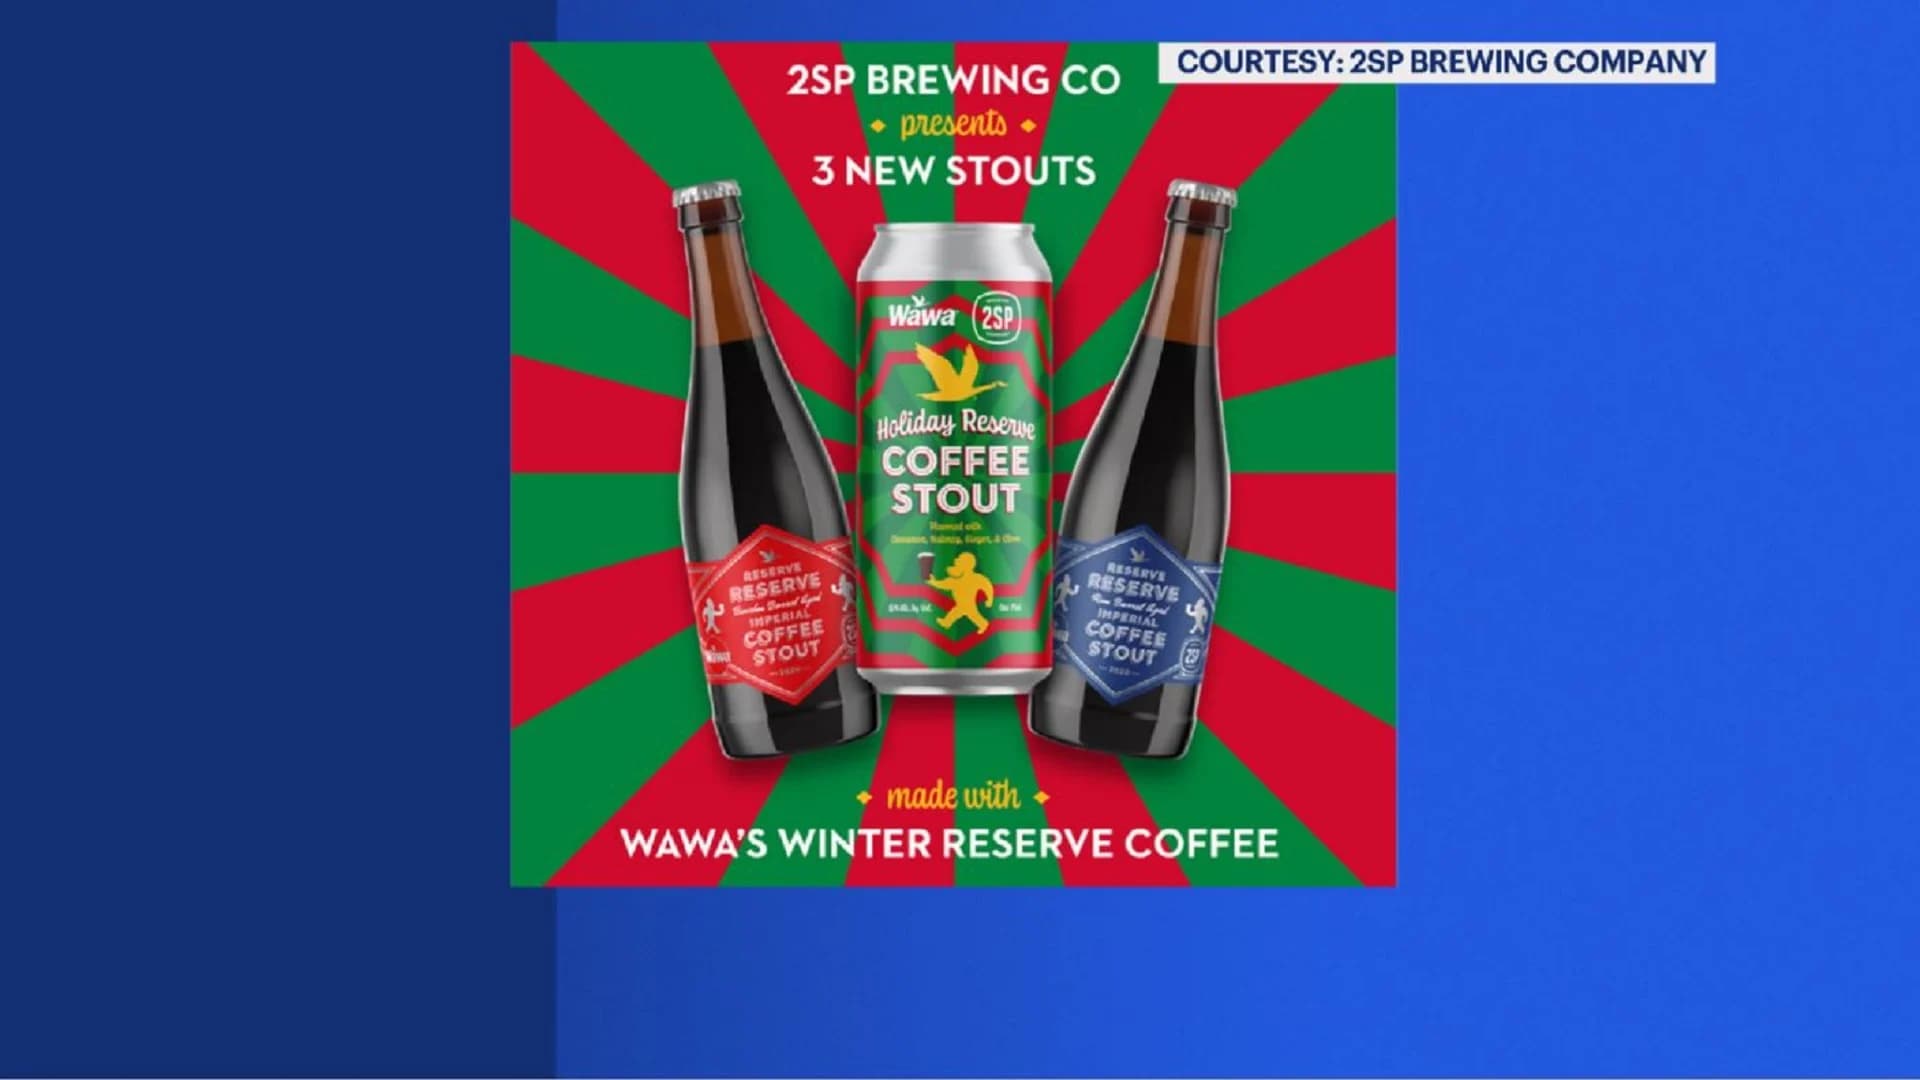 Wawa teams with Pennsylvania brewery to create Wawa coffee beer